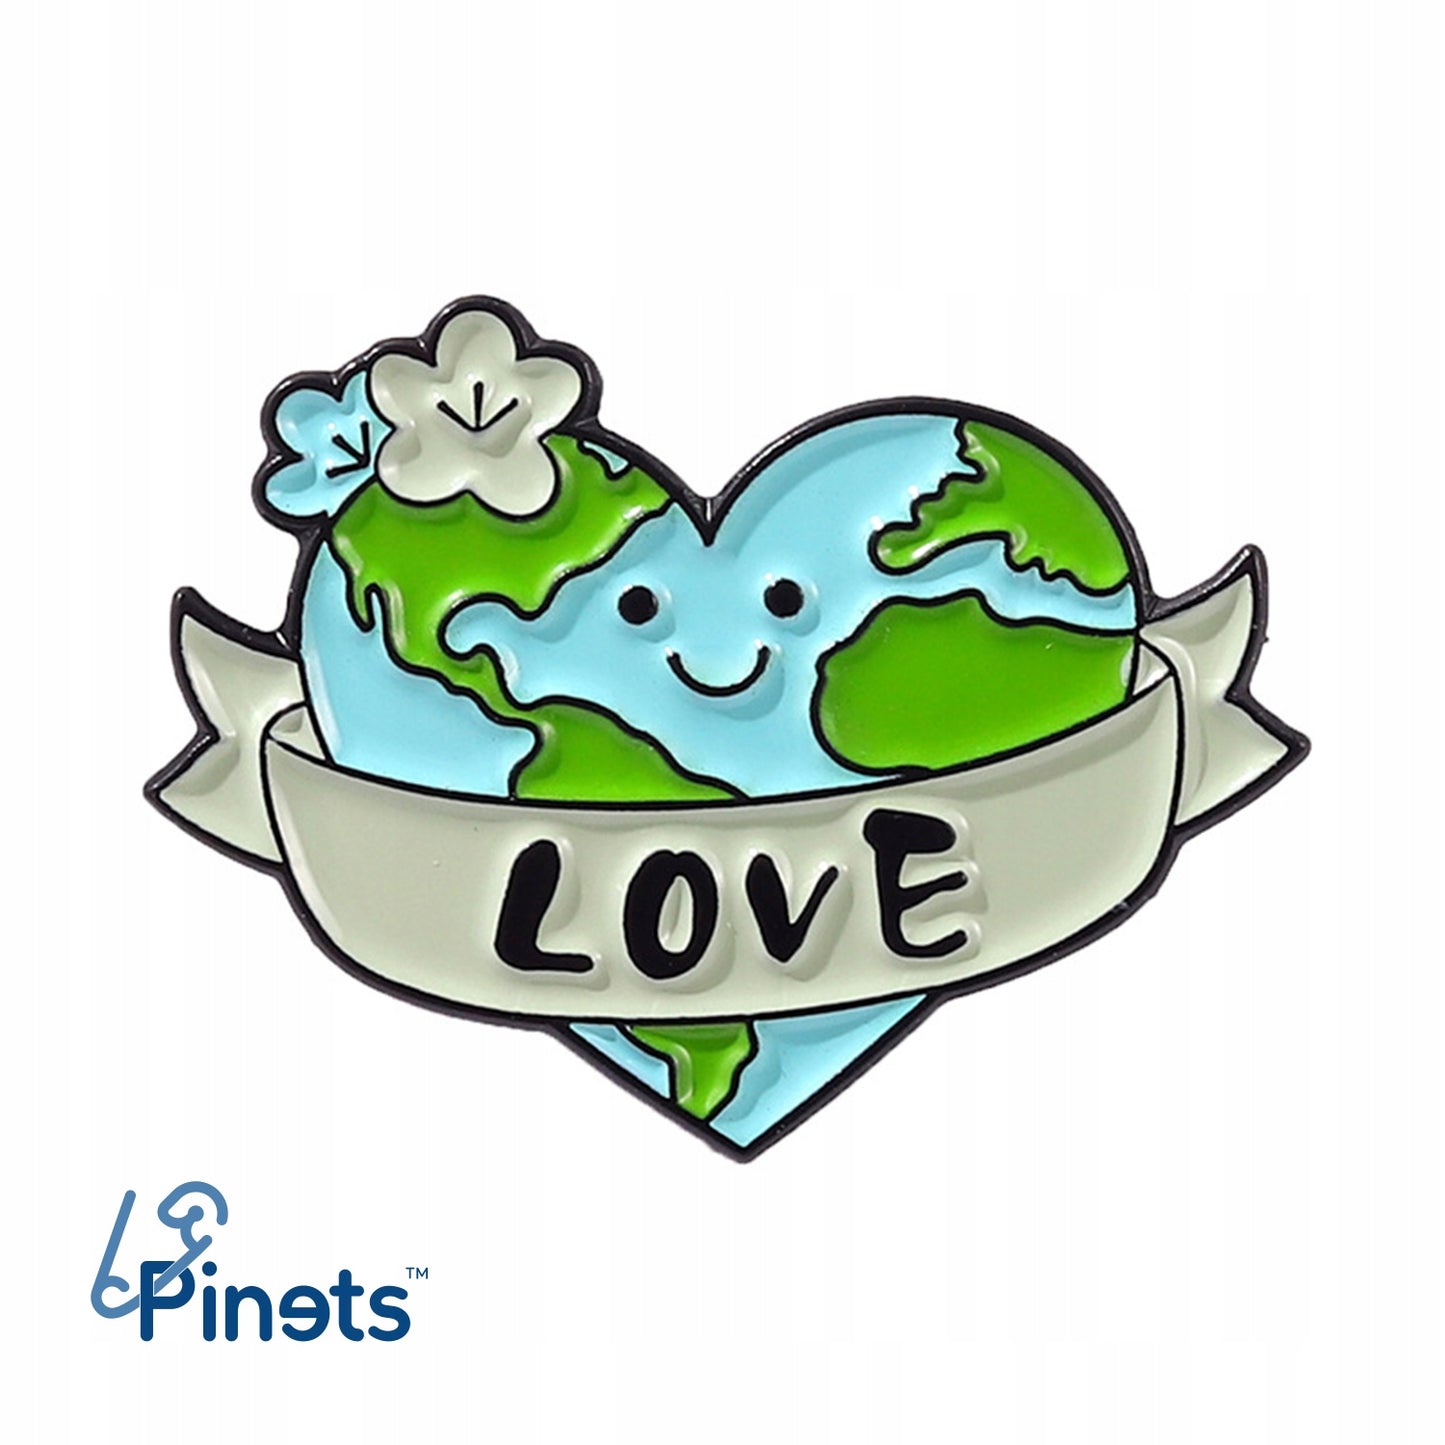 Ekologiczna przypinka z sercem w kształcie planety Ziemia i napisem "Love"